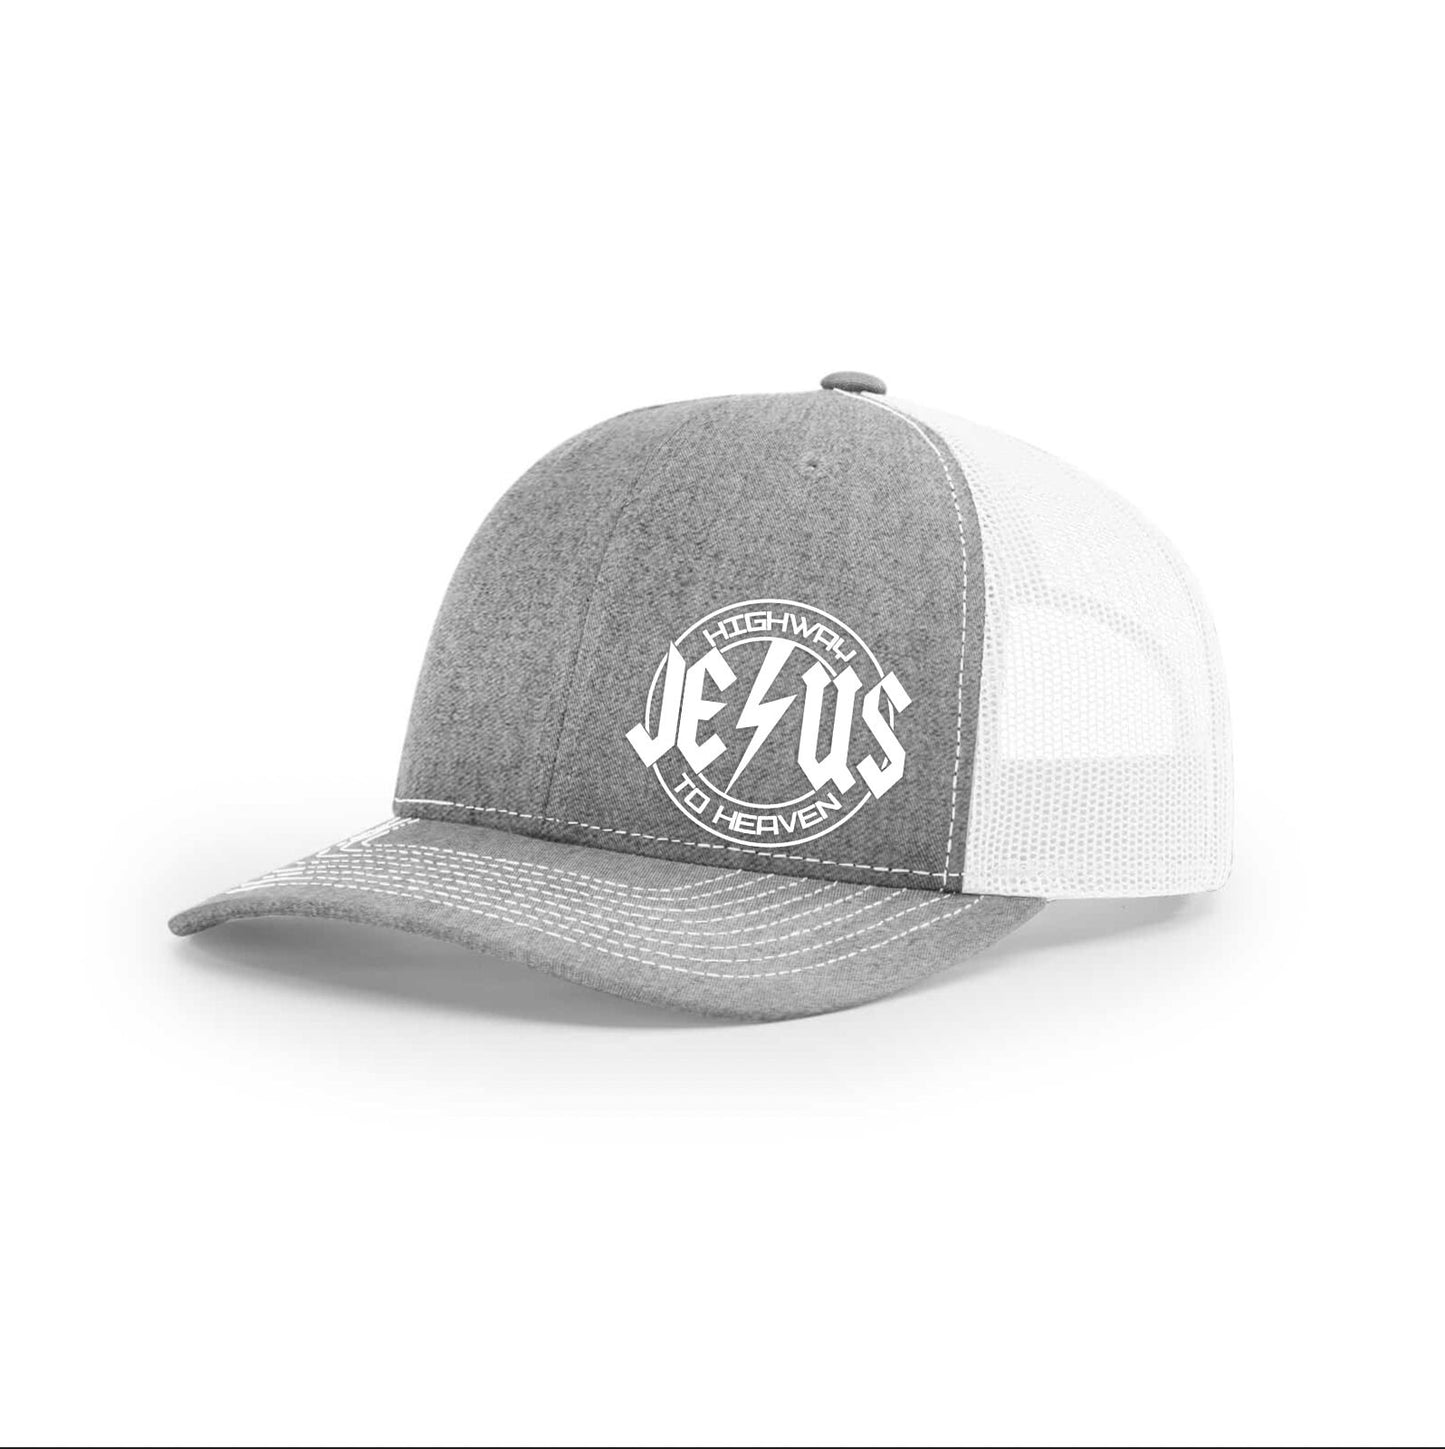 JESUS, Highway To Heaven R-FLEX Richardson 110 Stretch Hat